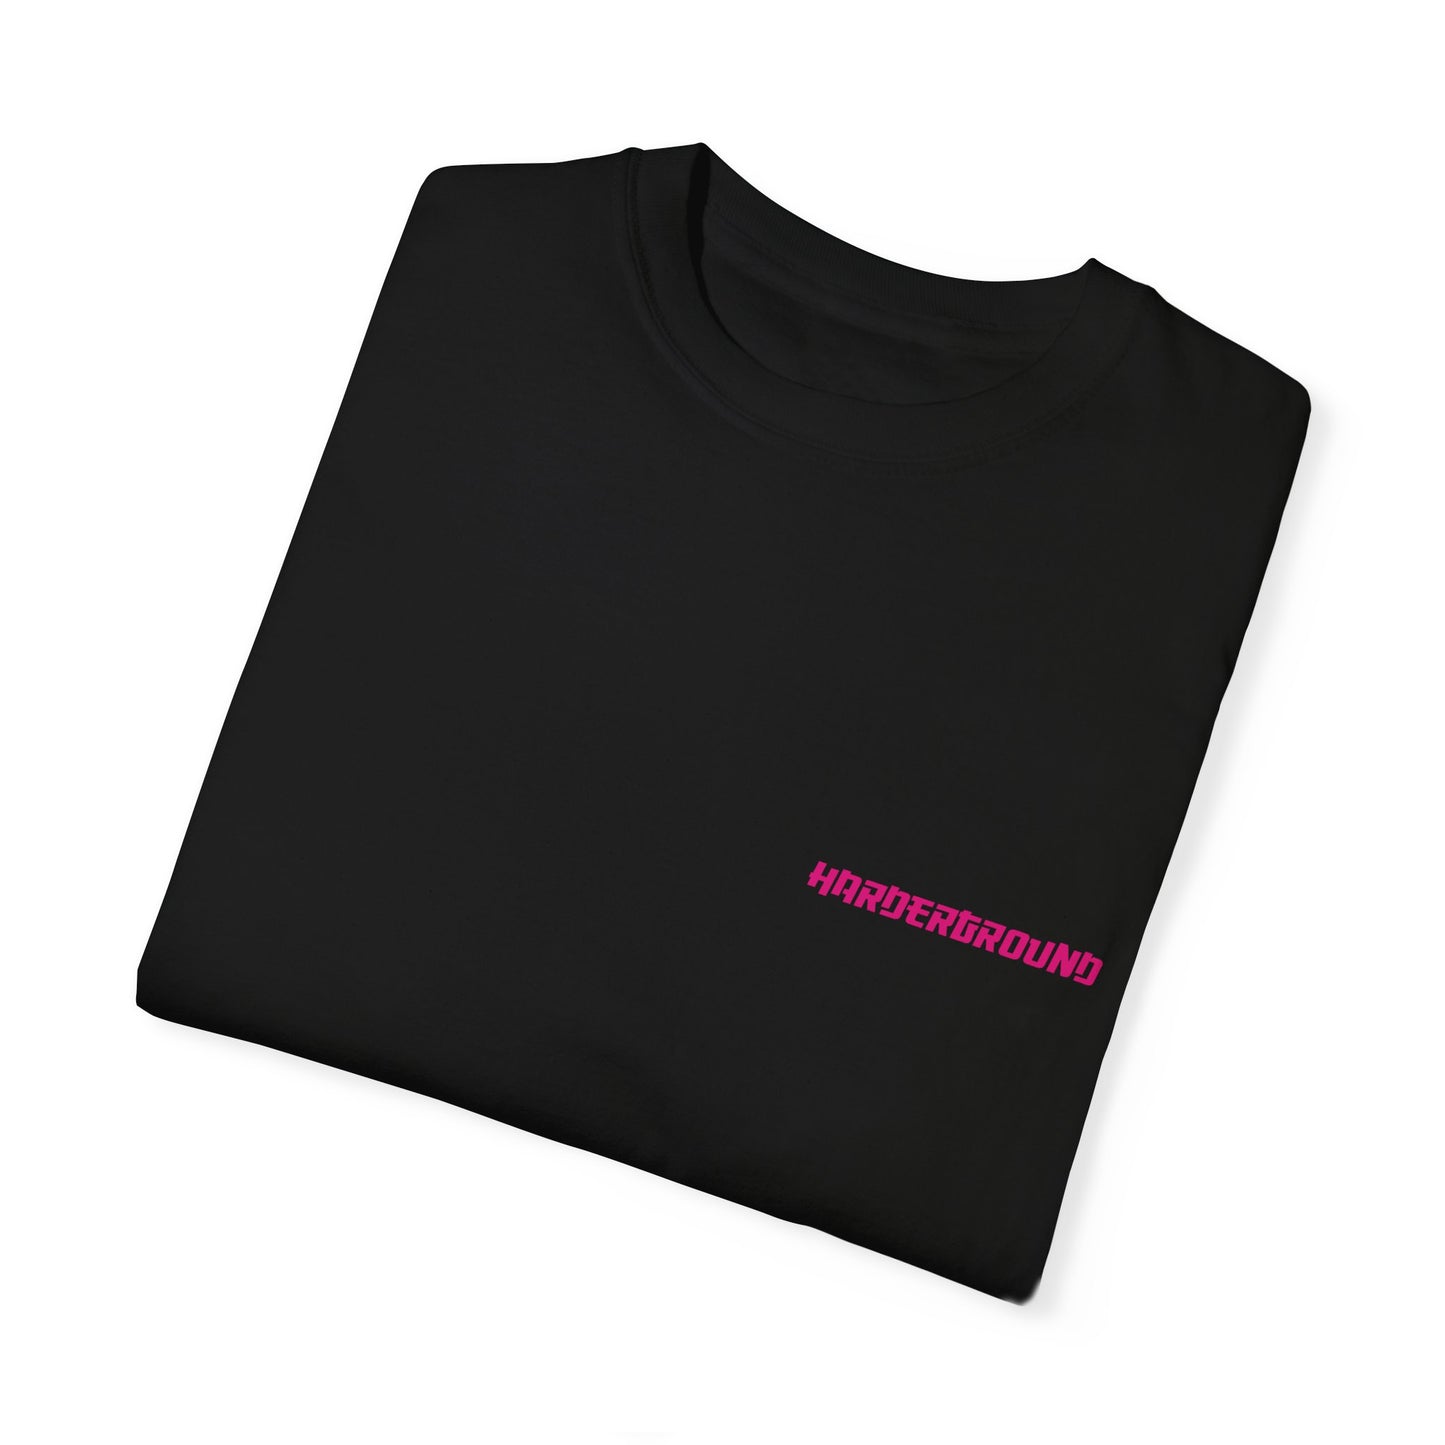 JDM Harderground - Unisex Garment-Dyed T-shirt - Front & back logo